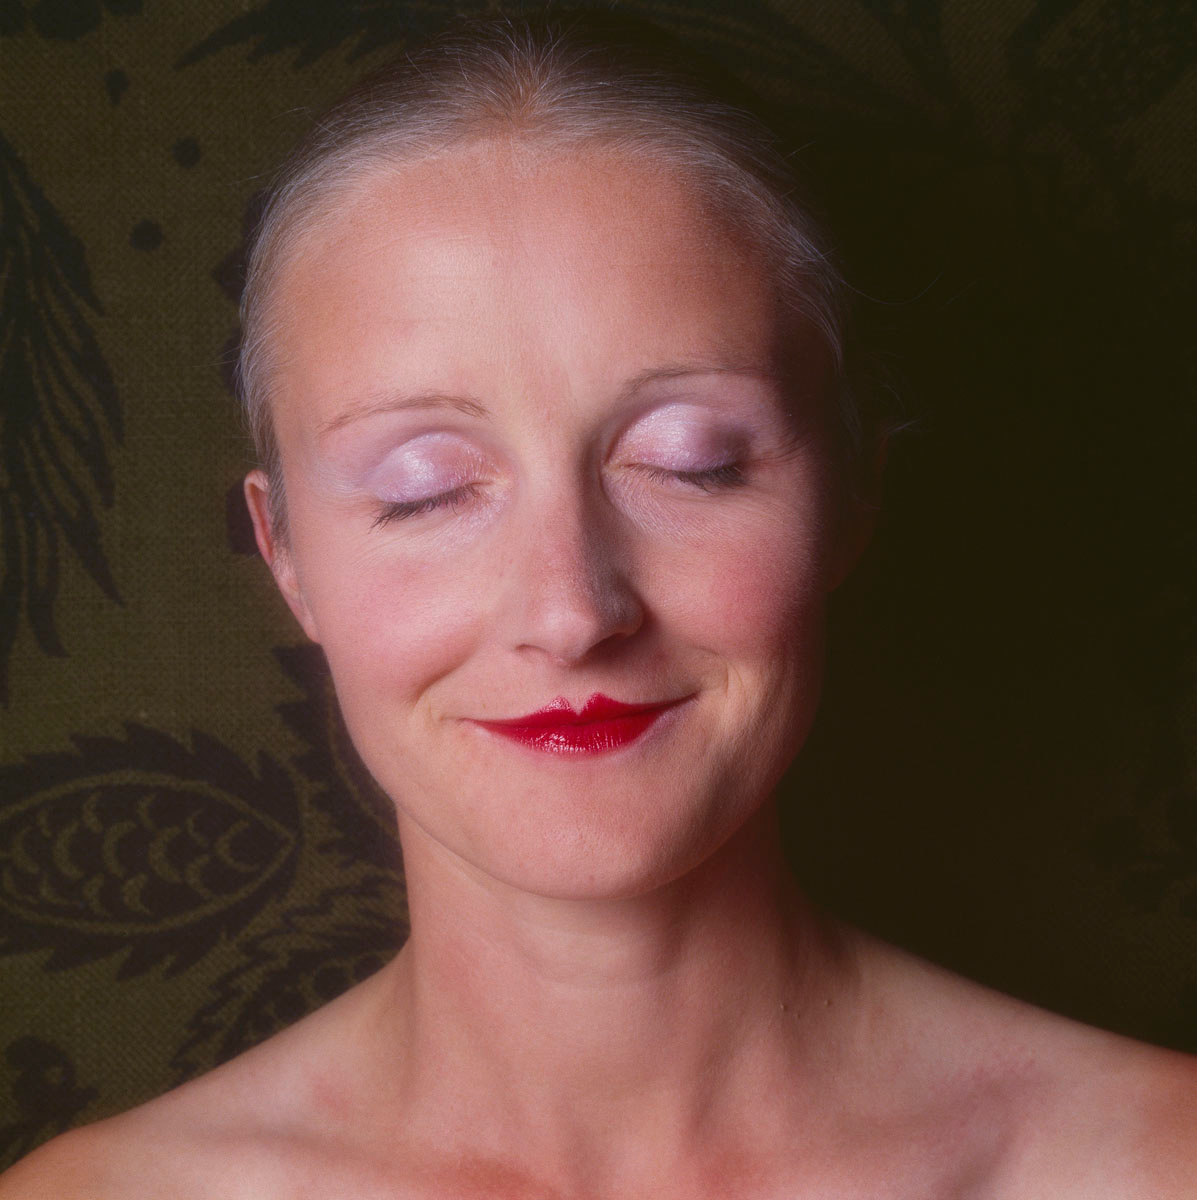 La photographie montre la tête d'une femme souriant les yeux fermés.